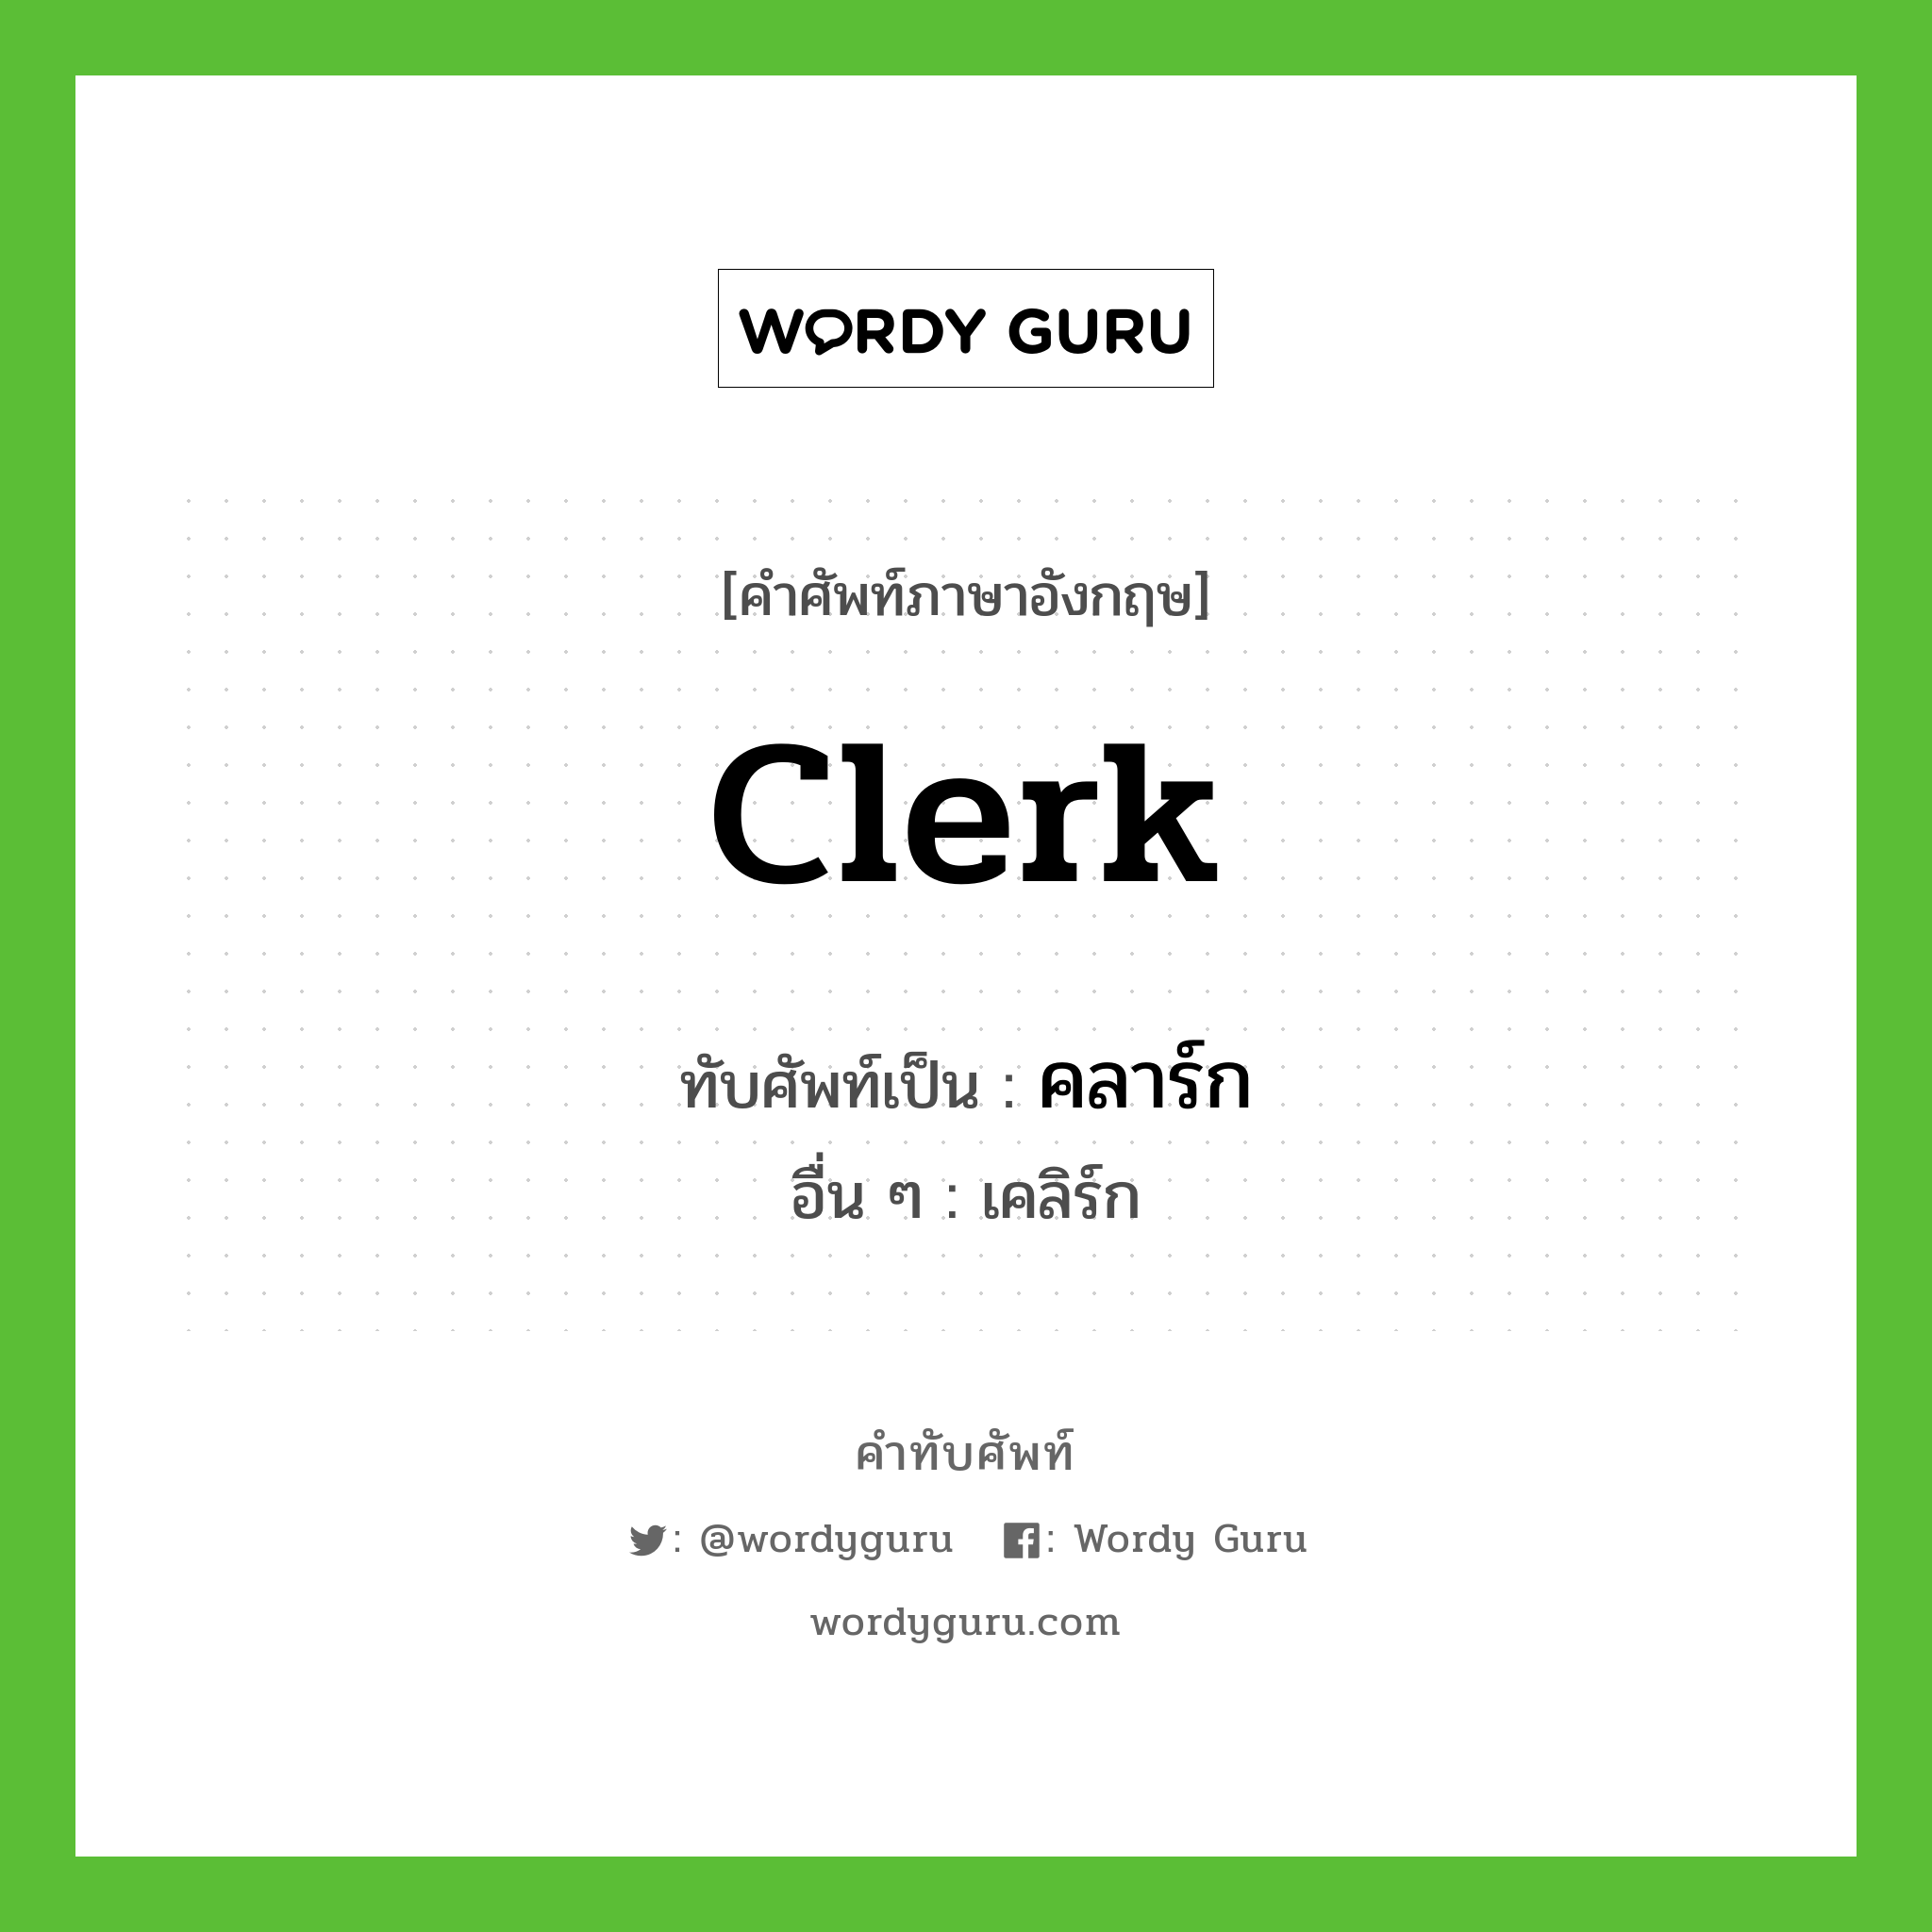 clerk เขียนเป็นคำไทยว่าอะไร?, คำศัพท์ภาษาอังกฤษ clerk ทับศัพท์เป็น คลาร์ก อื่น ๆ เคลิร์ก